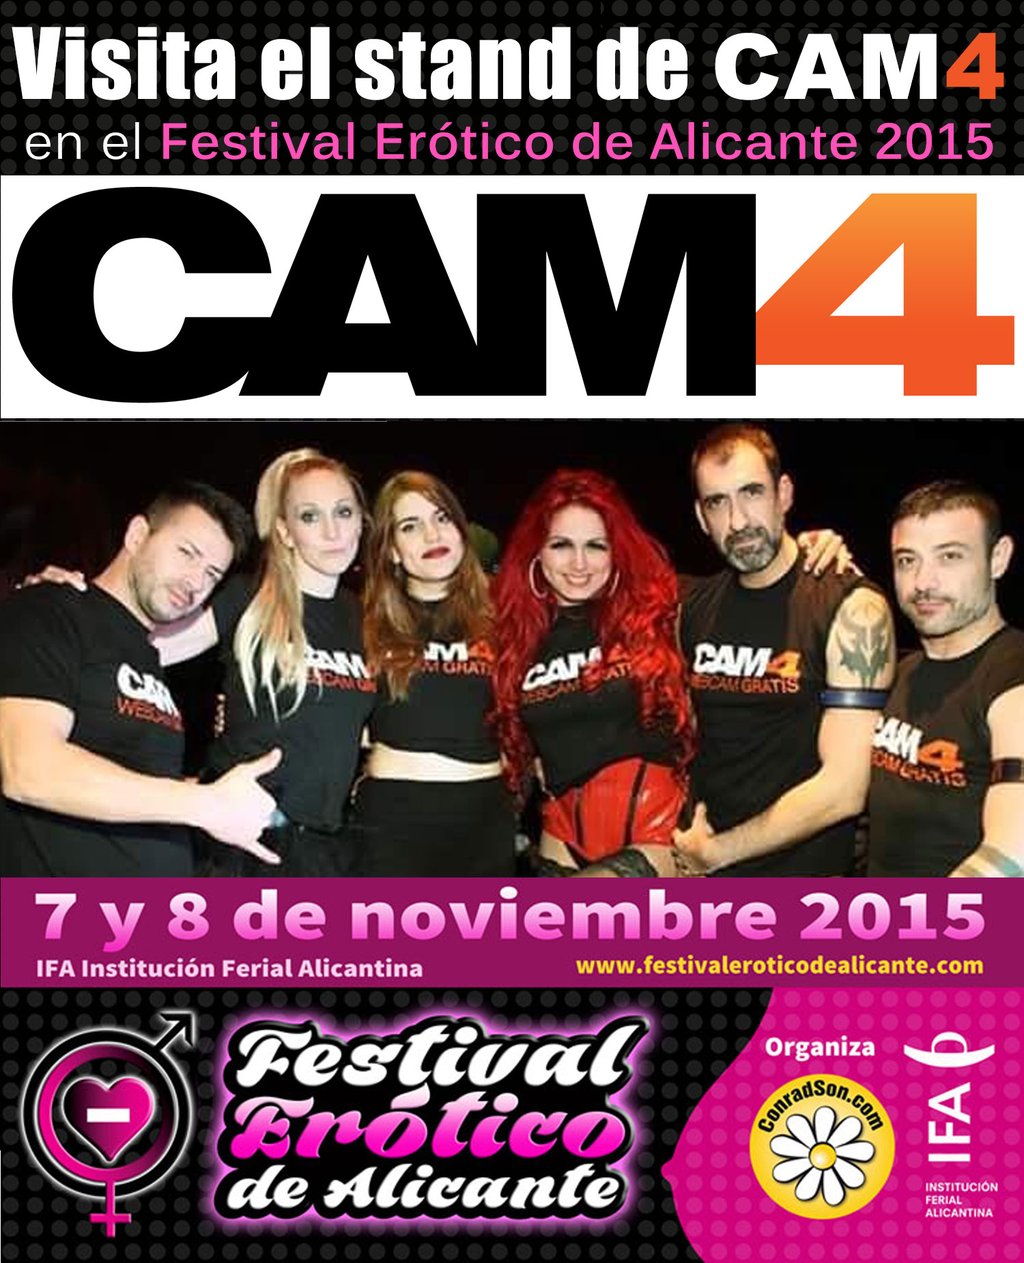 CAM4 visita el Festival Erótico de Alicante 2015